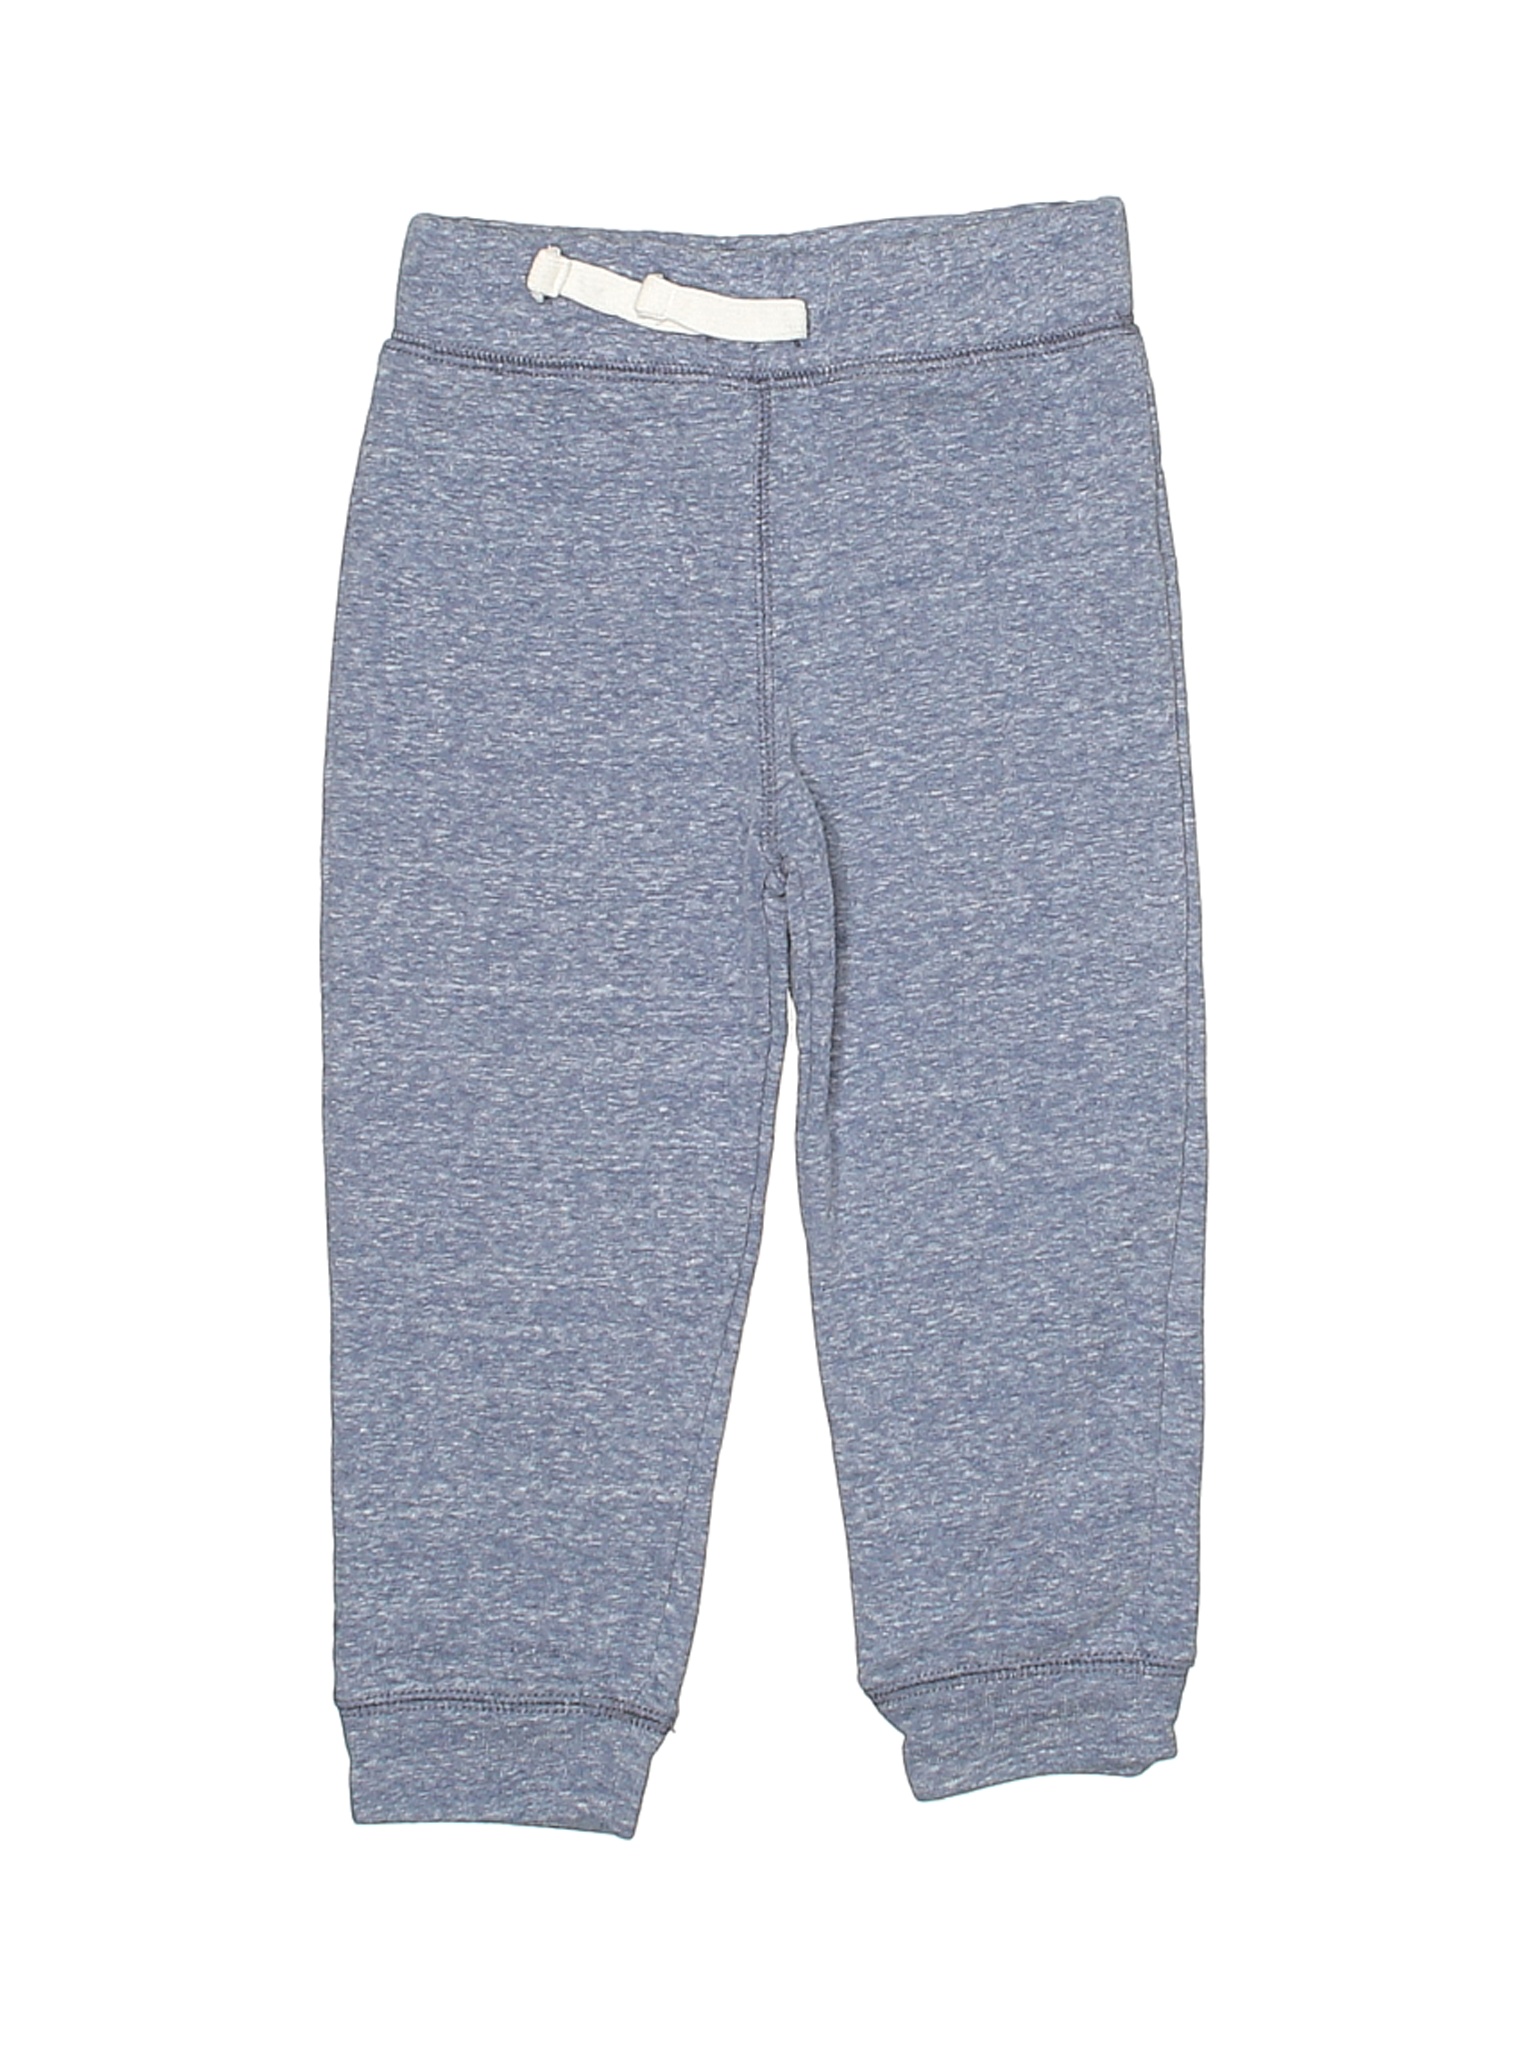 The Children's Place Boys Blue Sweatpants 2T | eBay